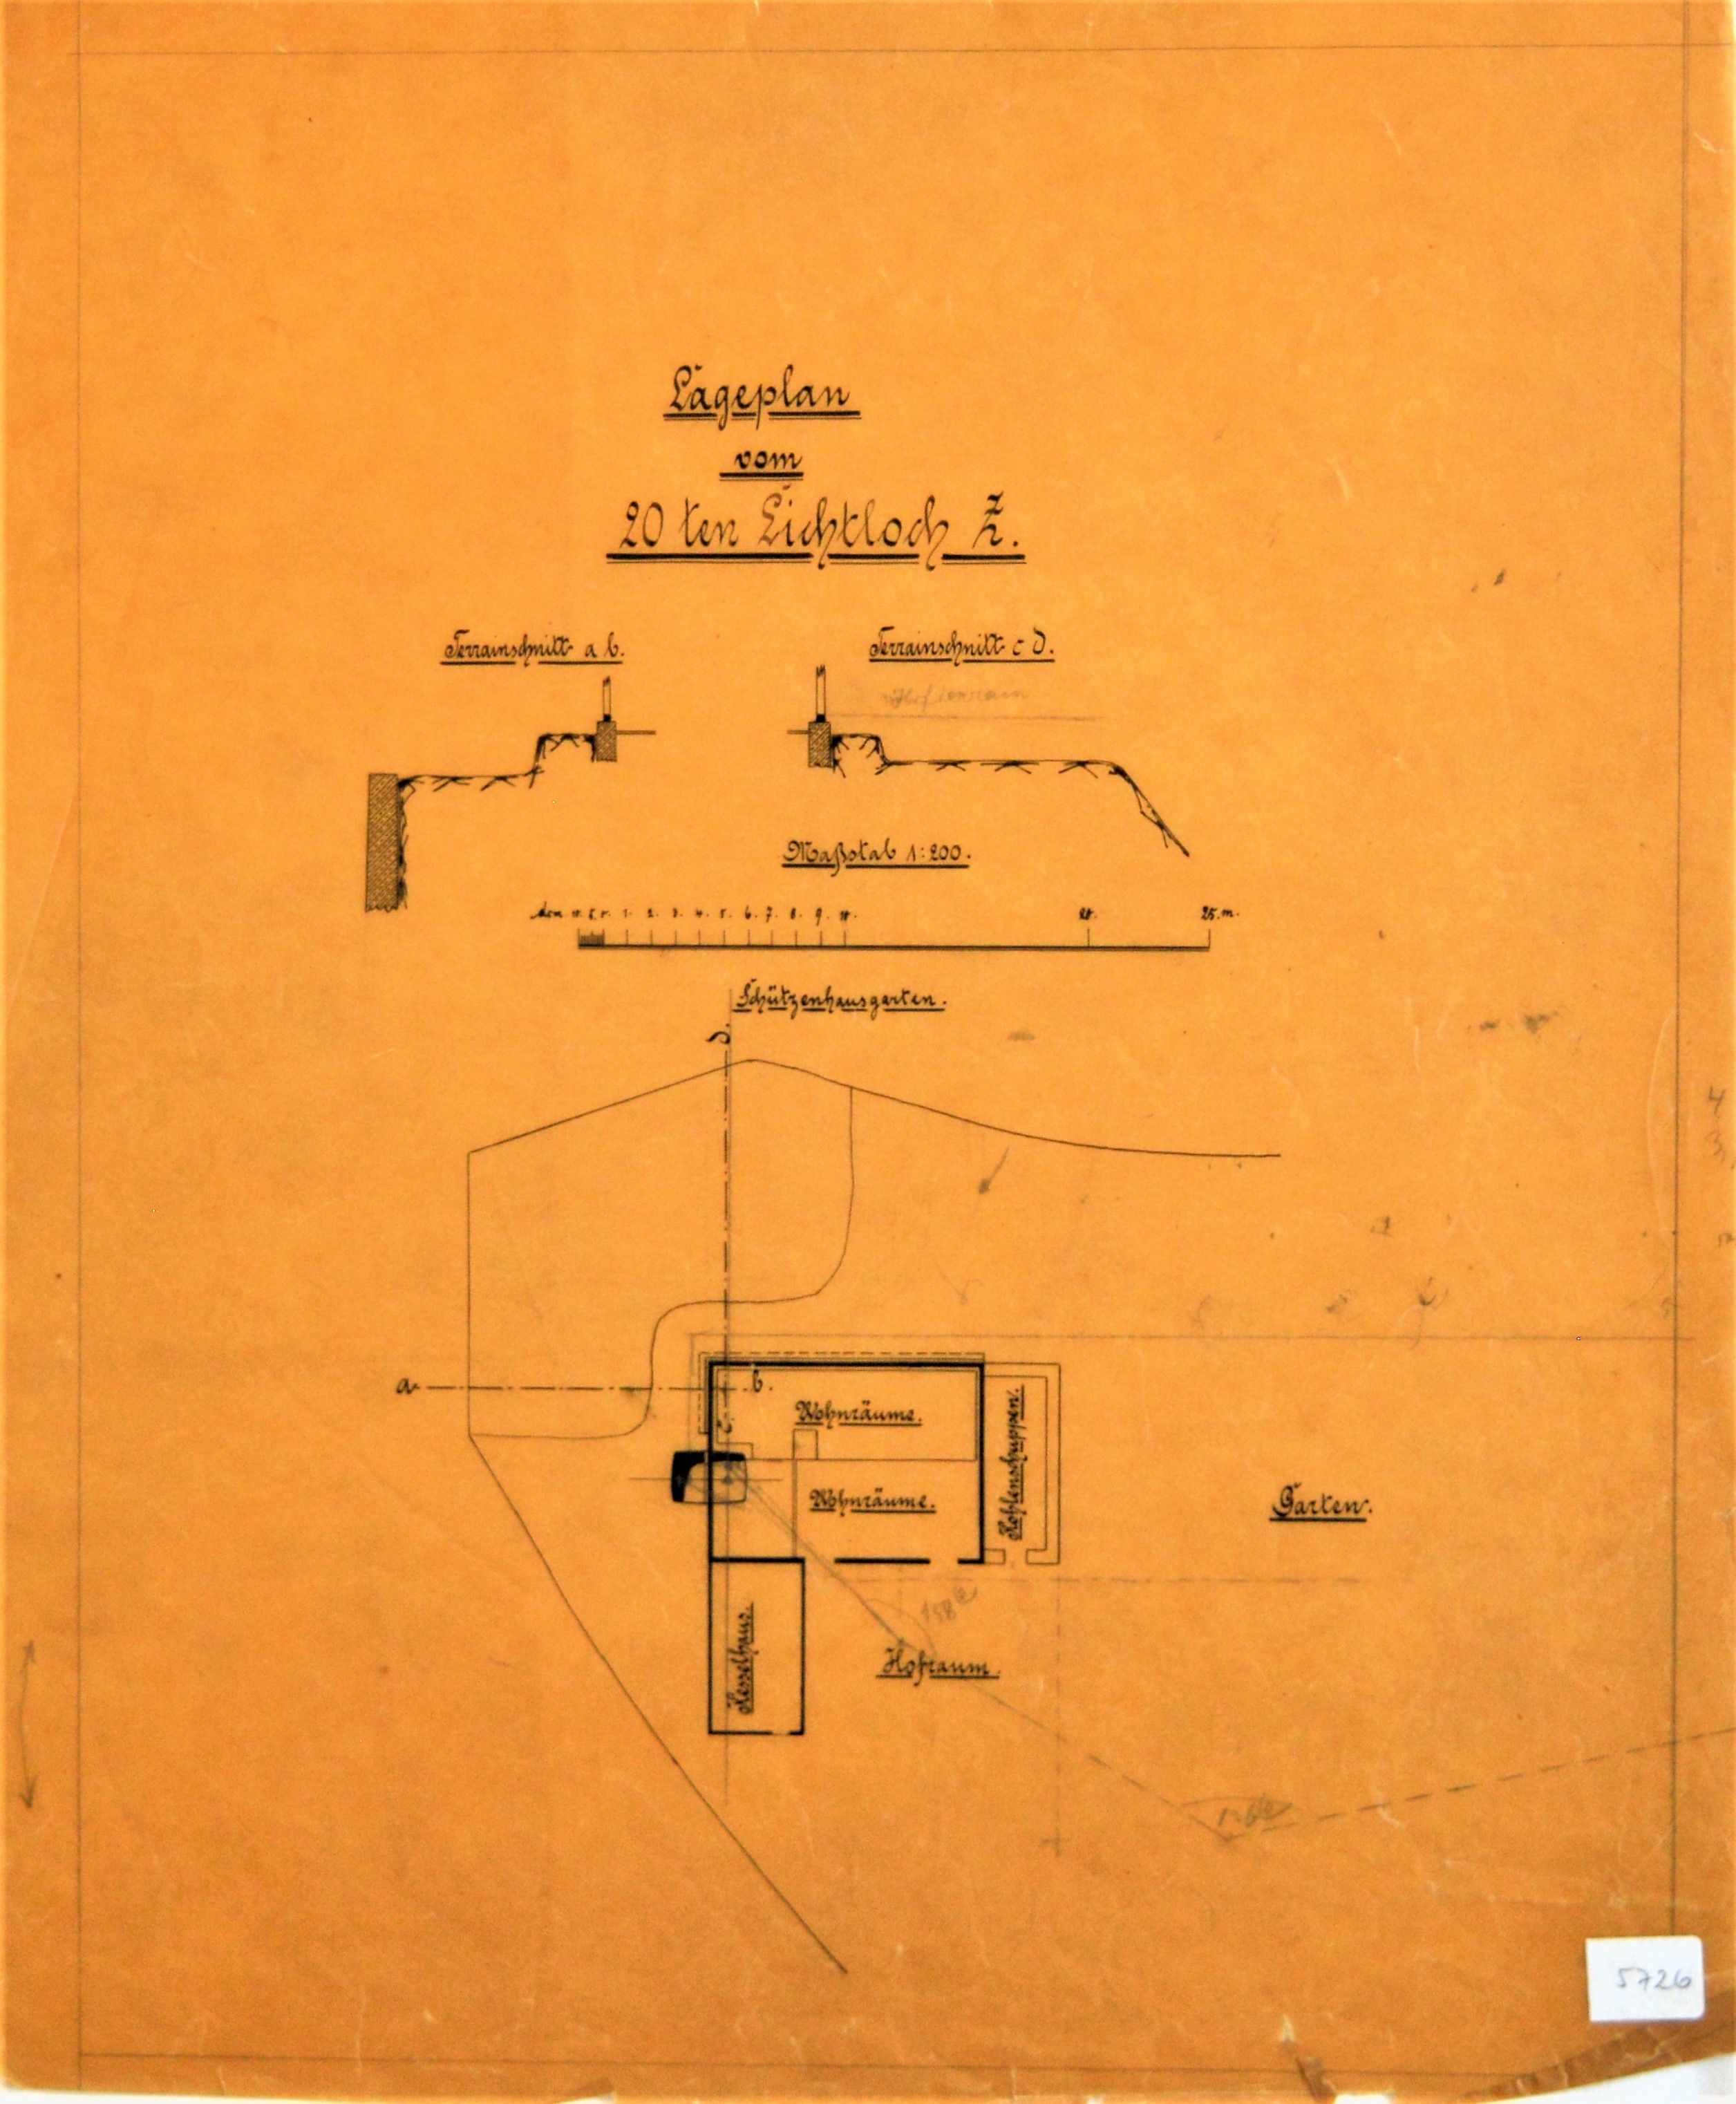 Lageplan vom 20 ten Lichtloch Z (Mansfeld-Museum im Humboldt-Schloss CC BY-NC-SA)